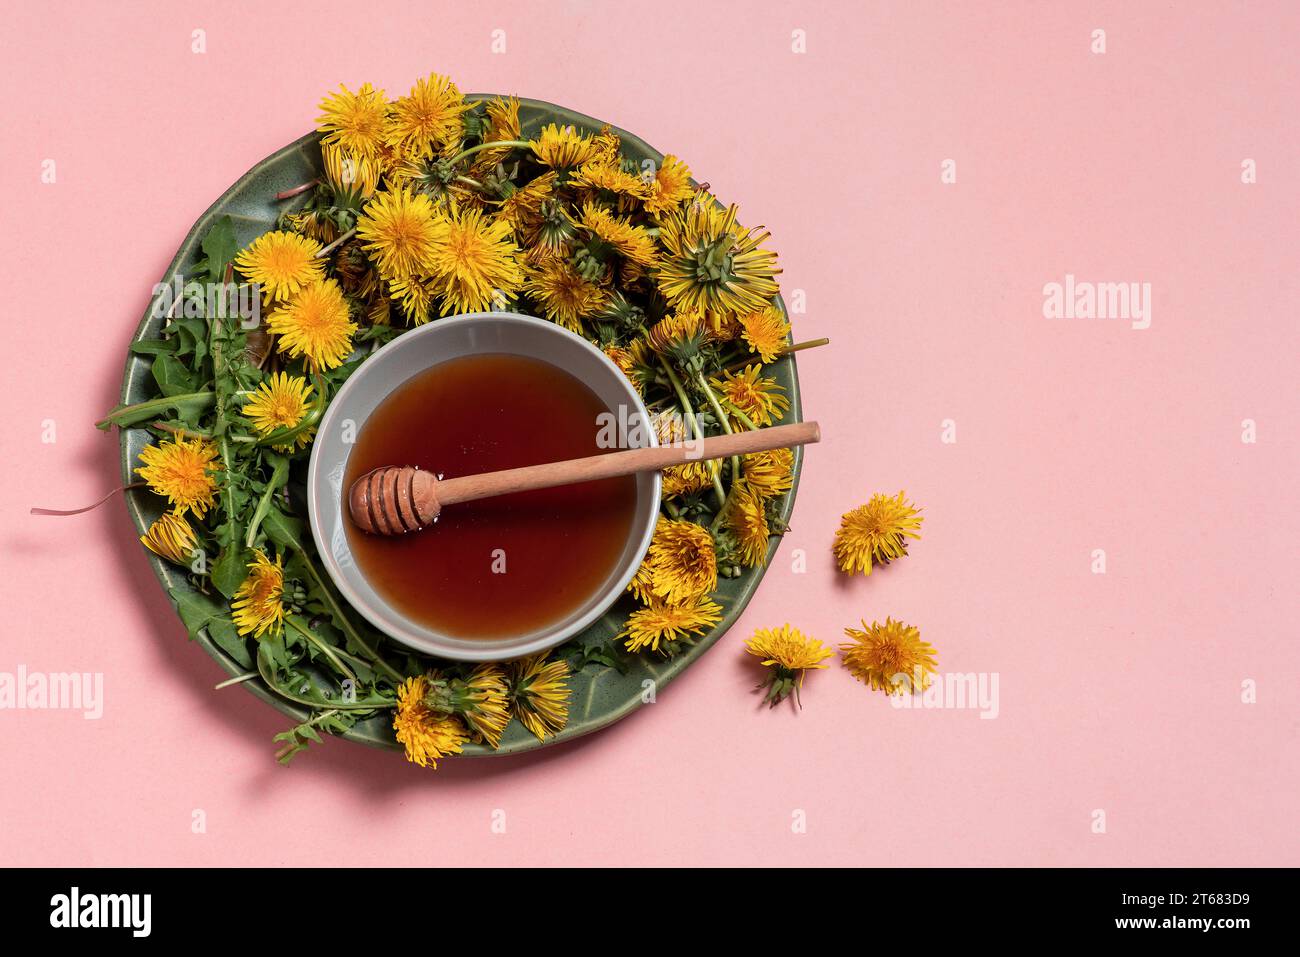 Miele di tarassino sano in una piccola ciotola bianca e fiori e foglie di tarassino fresco intorno, su sfondo rosa chiaro. Con spazio di copia Foto Stock